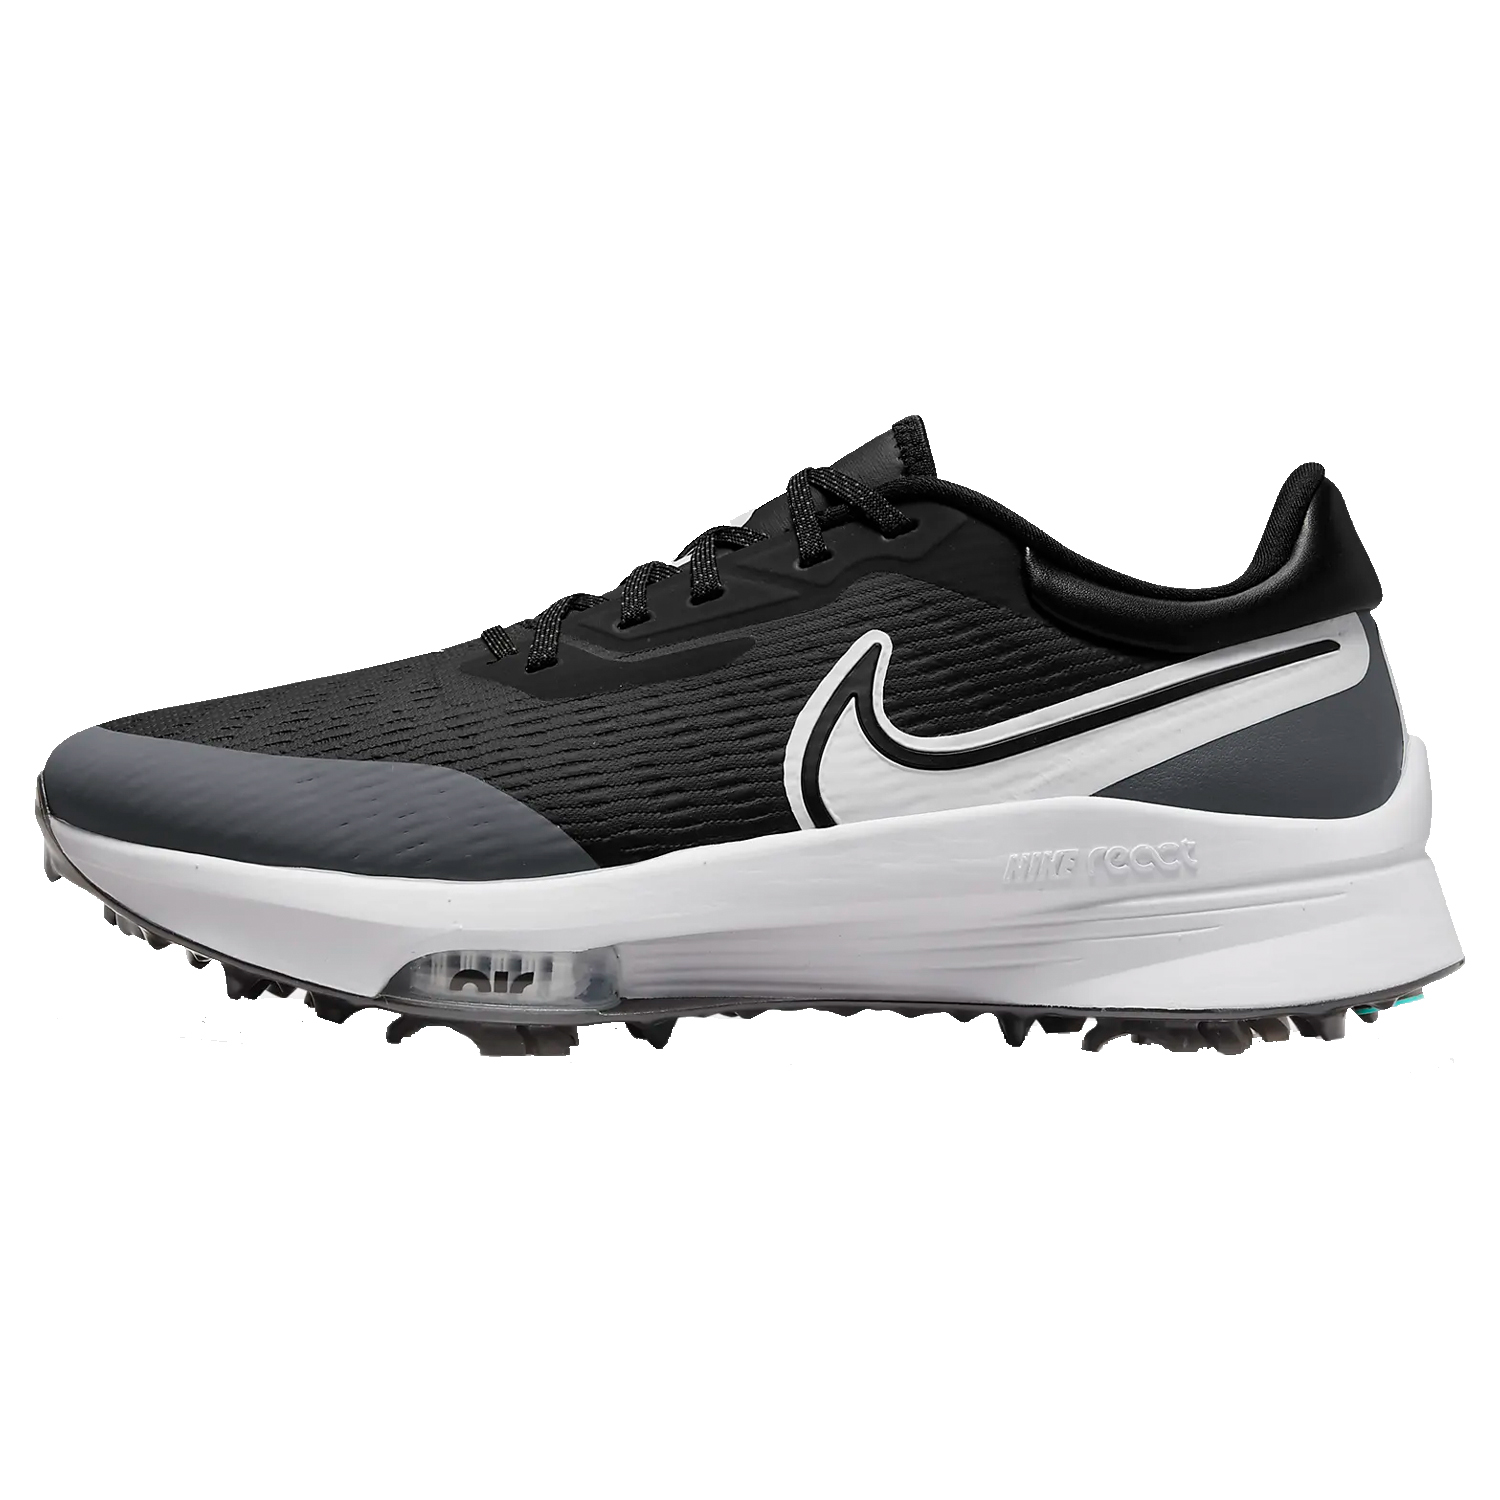 Nike Golf Air Zoom Infinity Tour Next% Golf Shoes  - Black/White/Iron Grey